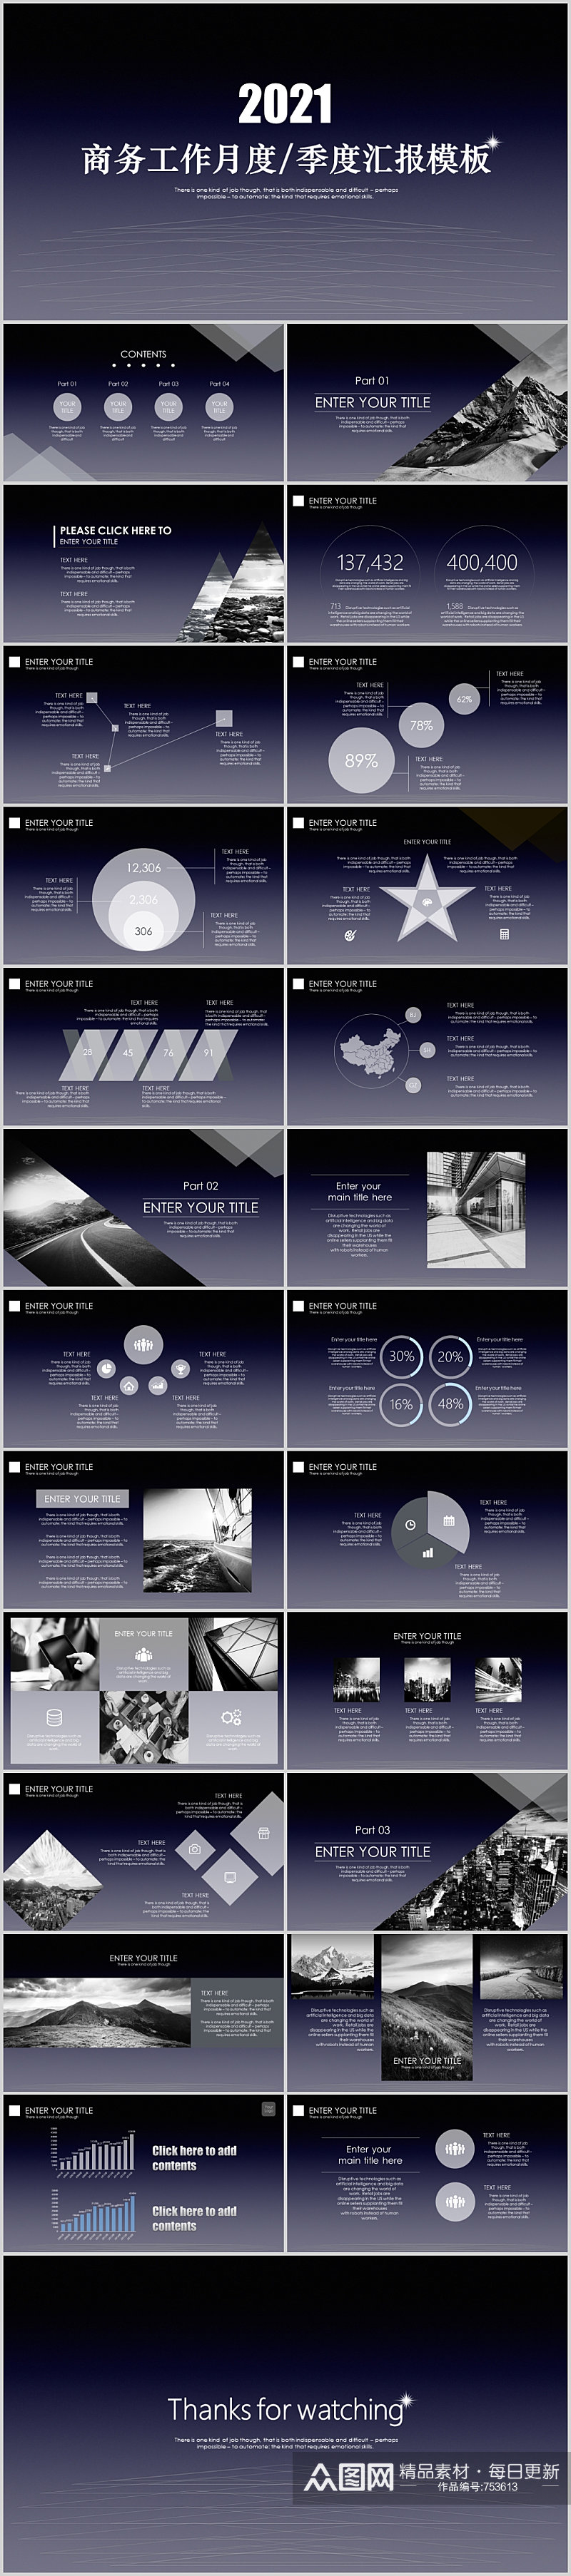 高端苹果风年度报告产品展示商务路演模板素材